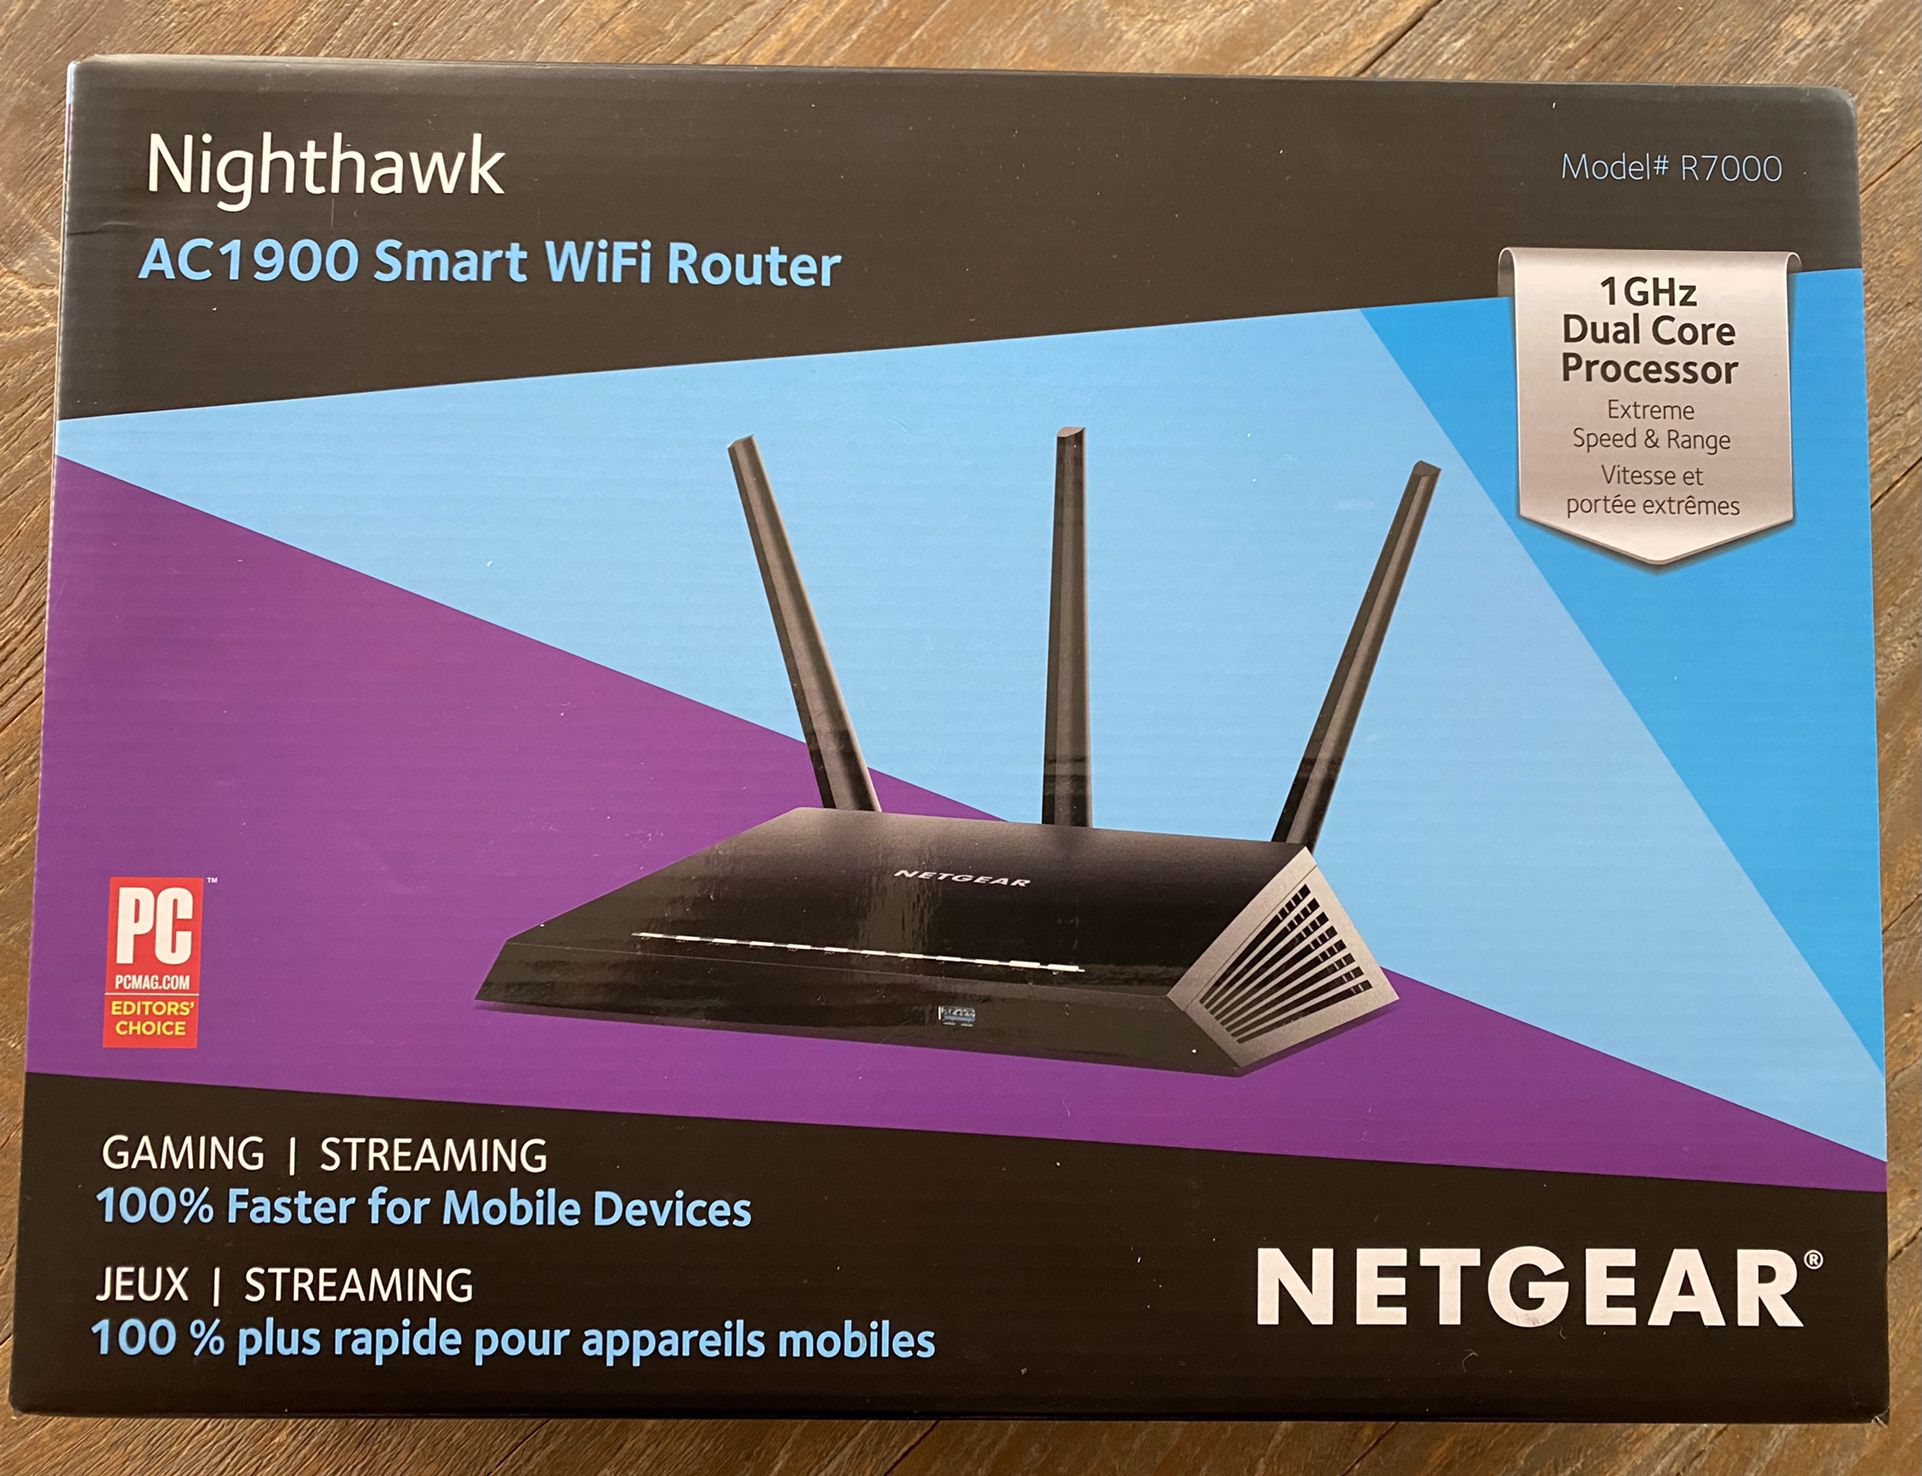 Netgear Nighthawk AC1900 Smart WiFi Router - Model #R7000 - New In box